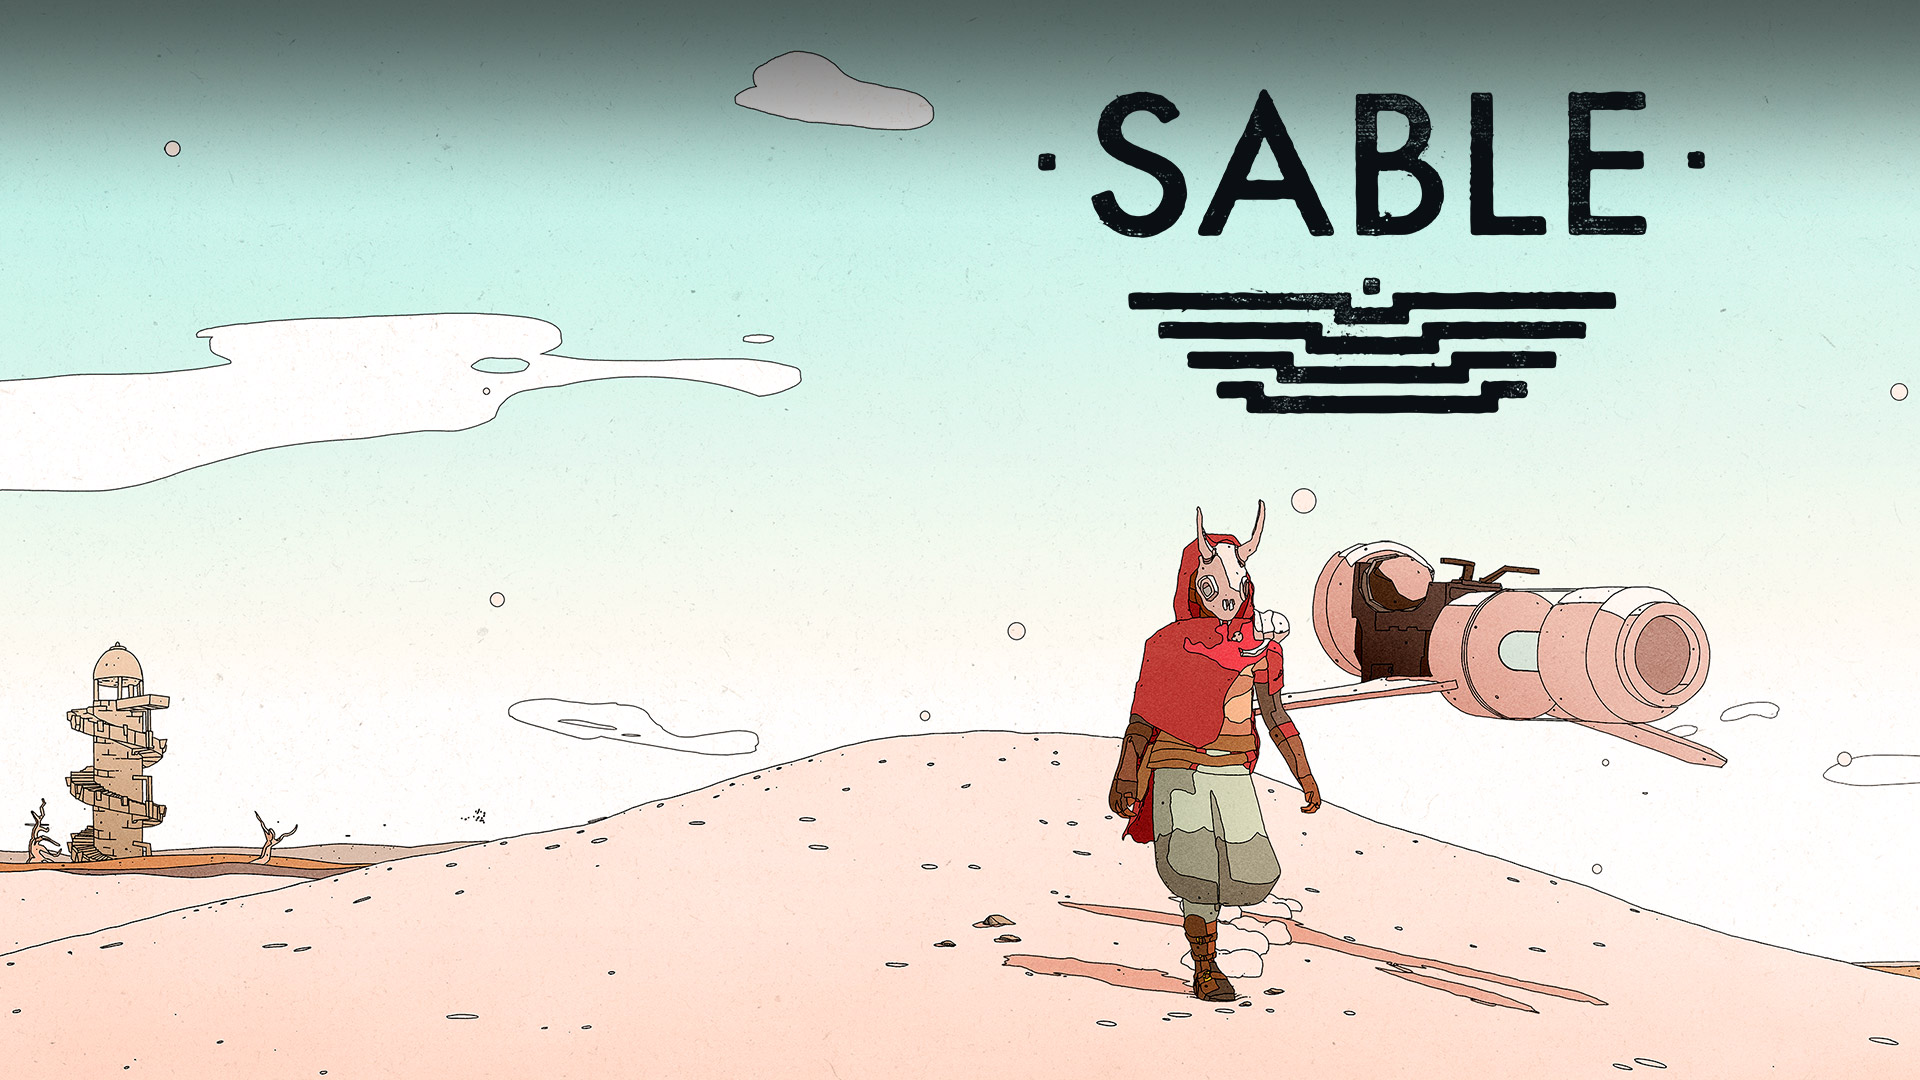 Logotipo da Sable, Sable no deserto com uma hoverbike